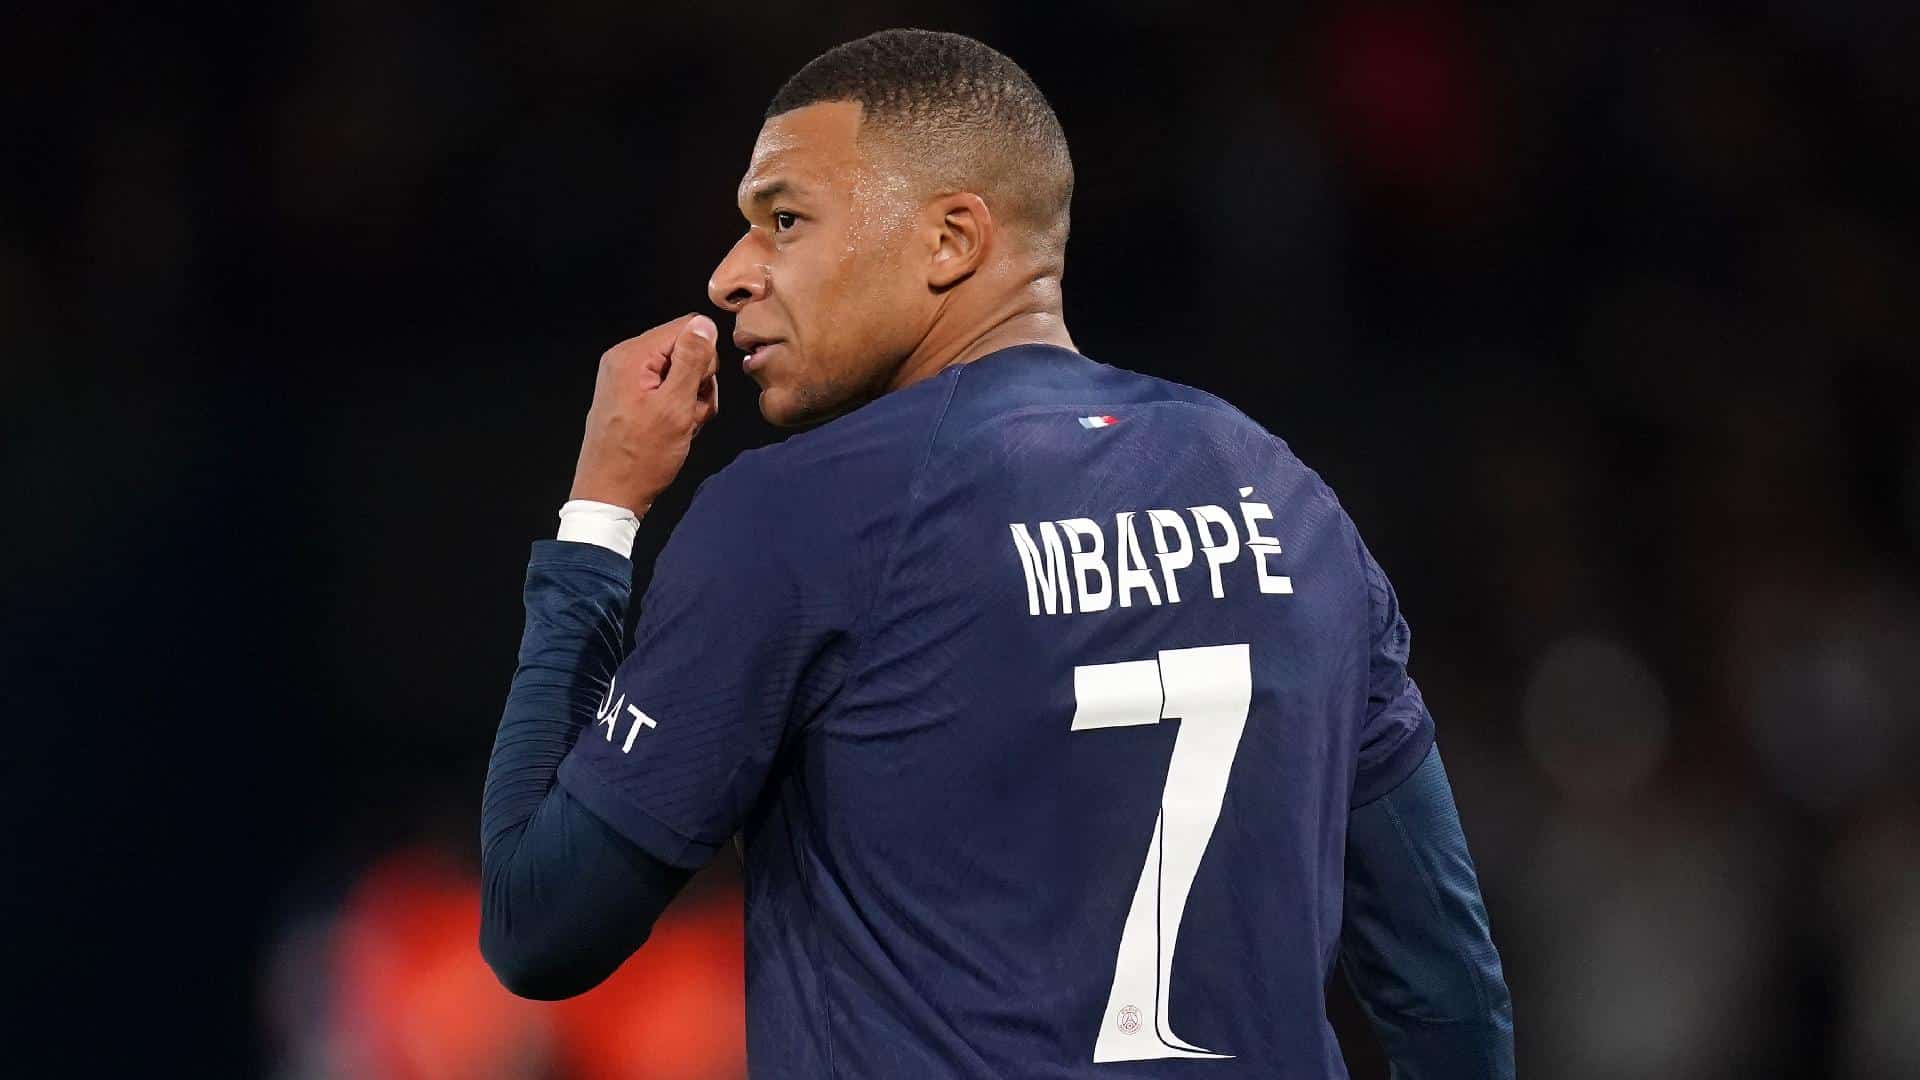 Mbappé en partido de la Ligue 1 con el PSG.